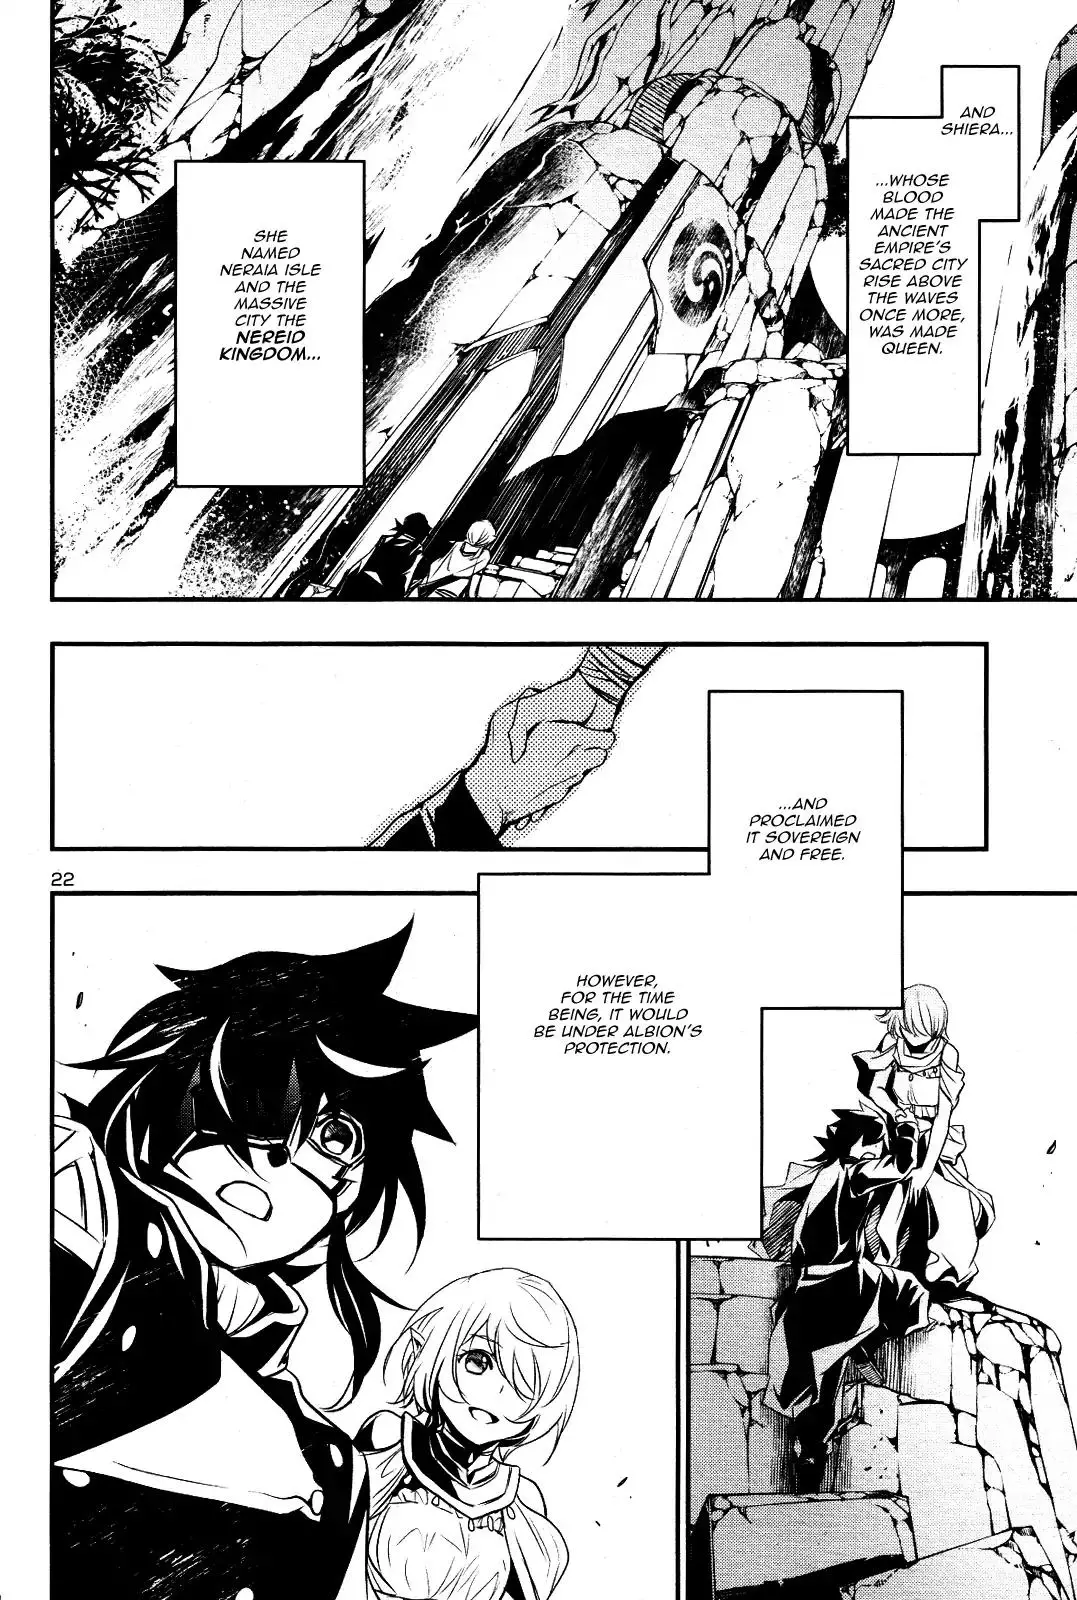 Shinju no Nectar - 21 page 20